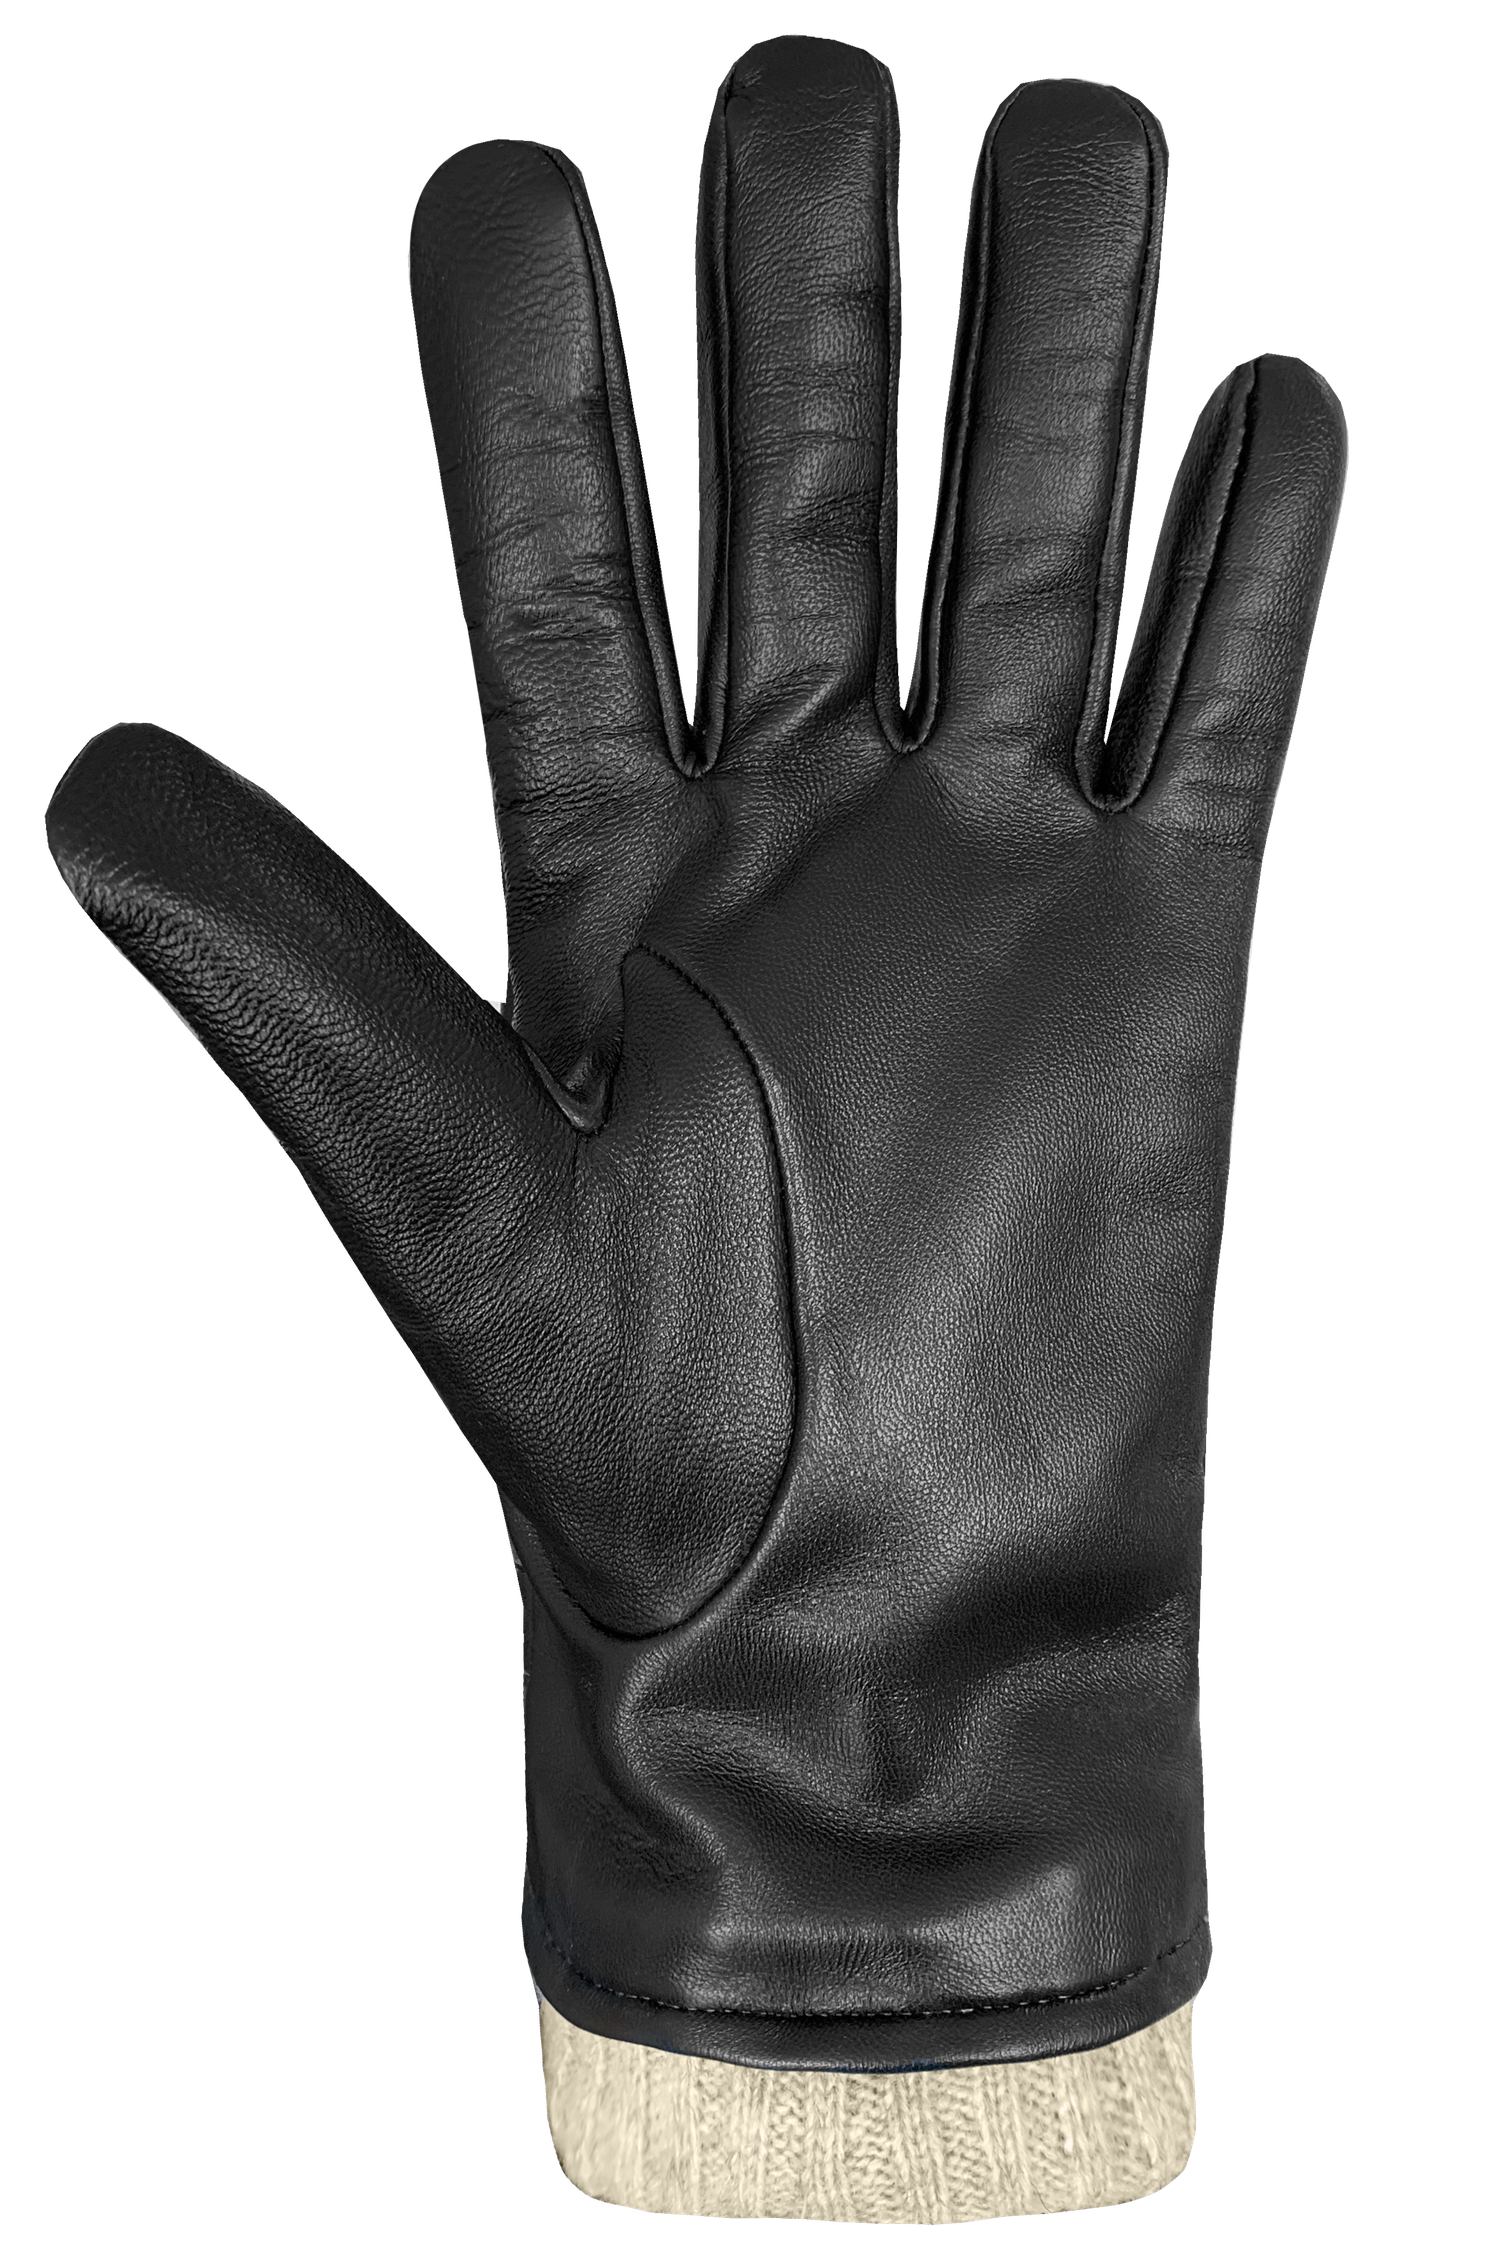 Mens' Dario Gloves by Auclair Glove S / Black/Cognac